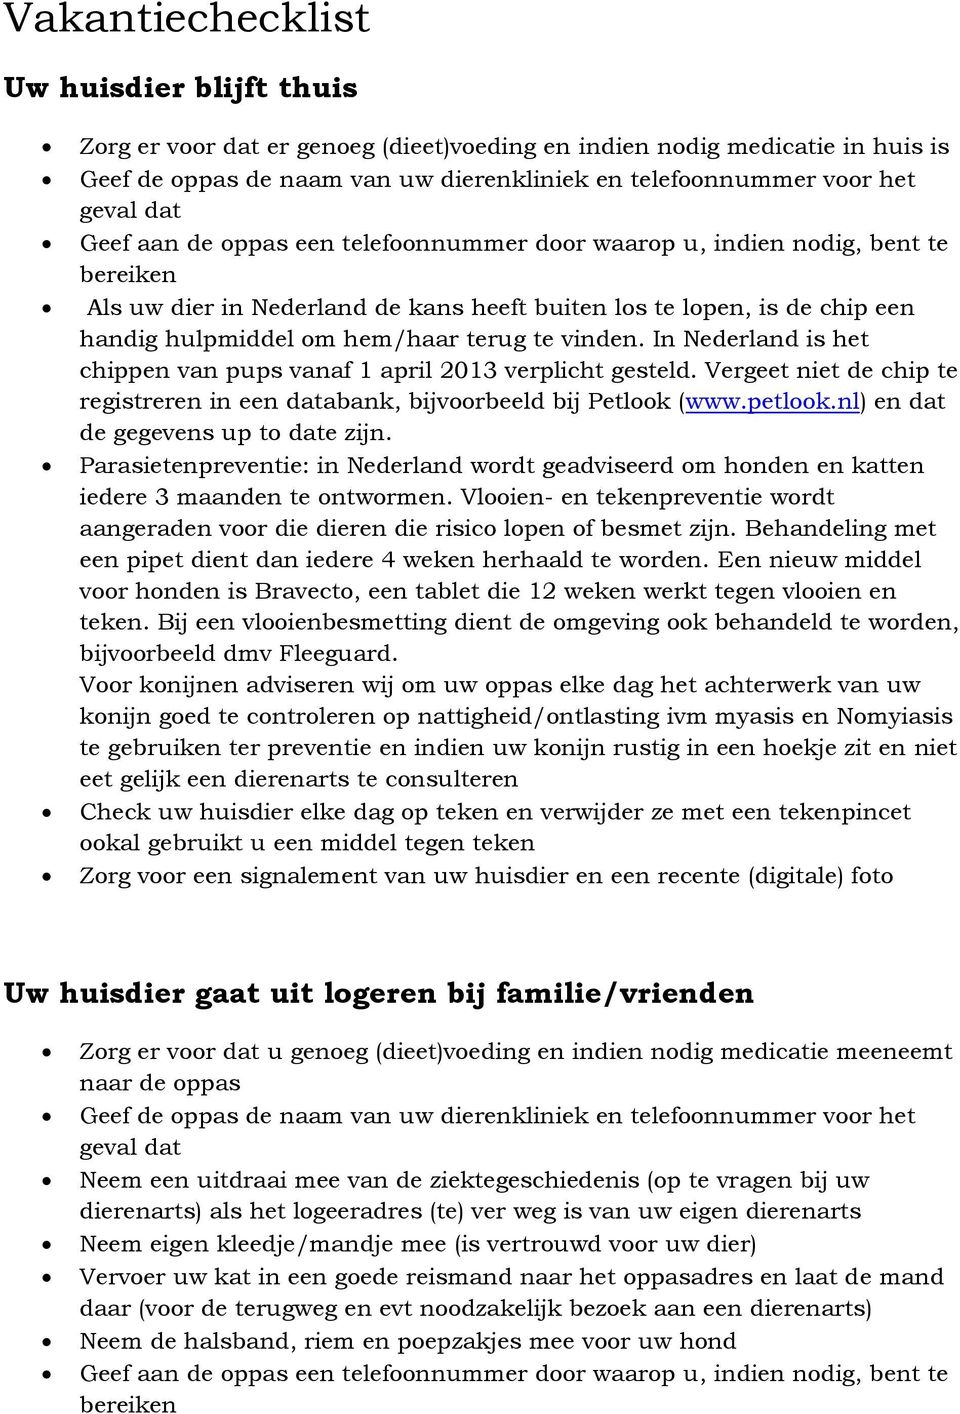 te vinden. In Nederland is het chippen van pups vanaf 1 april 2013 verplicht gesteld. Vergeet niet de chip te registreren in een databank, bijvoorbeeld bij Petlook (www.petlook.